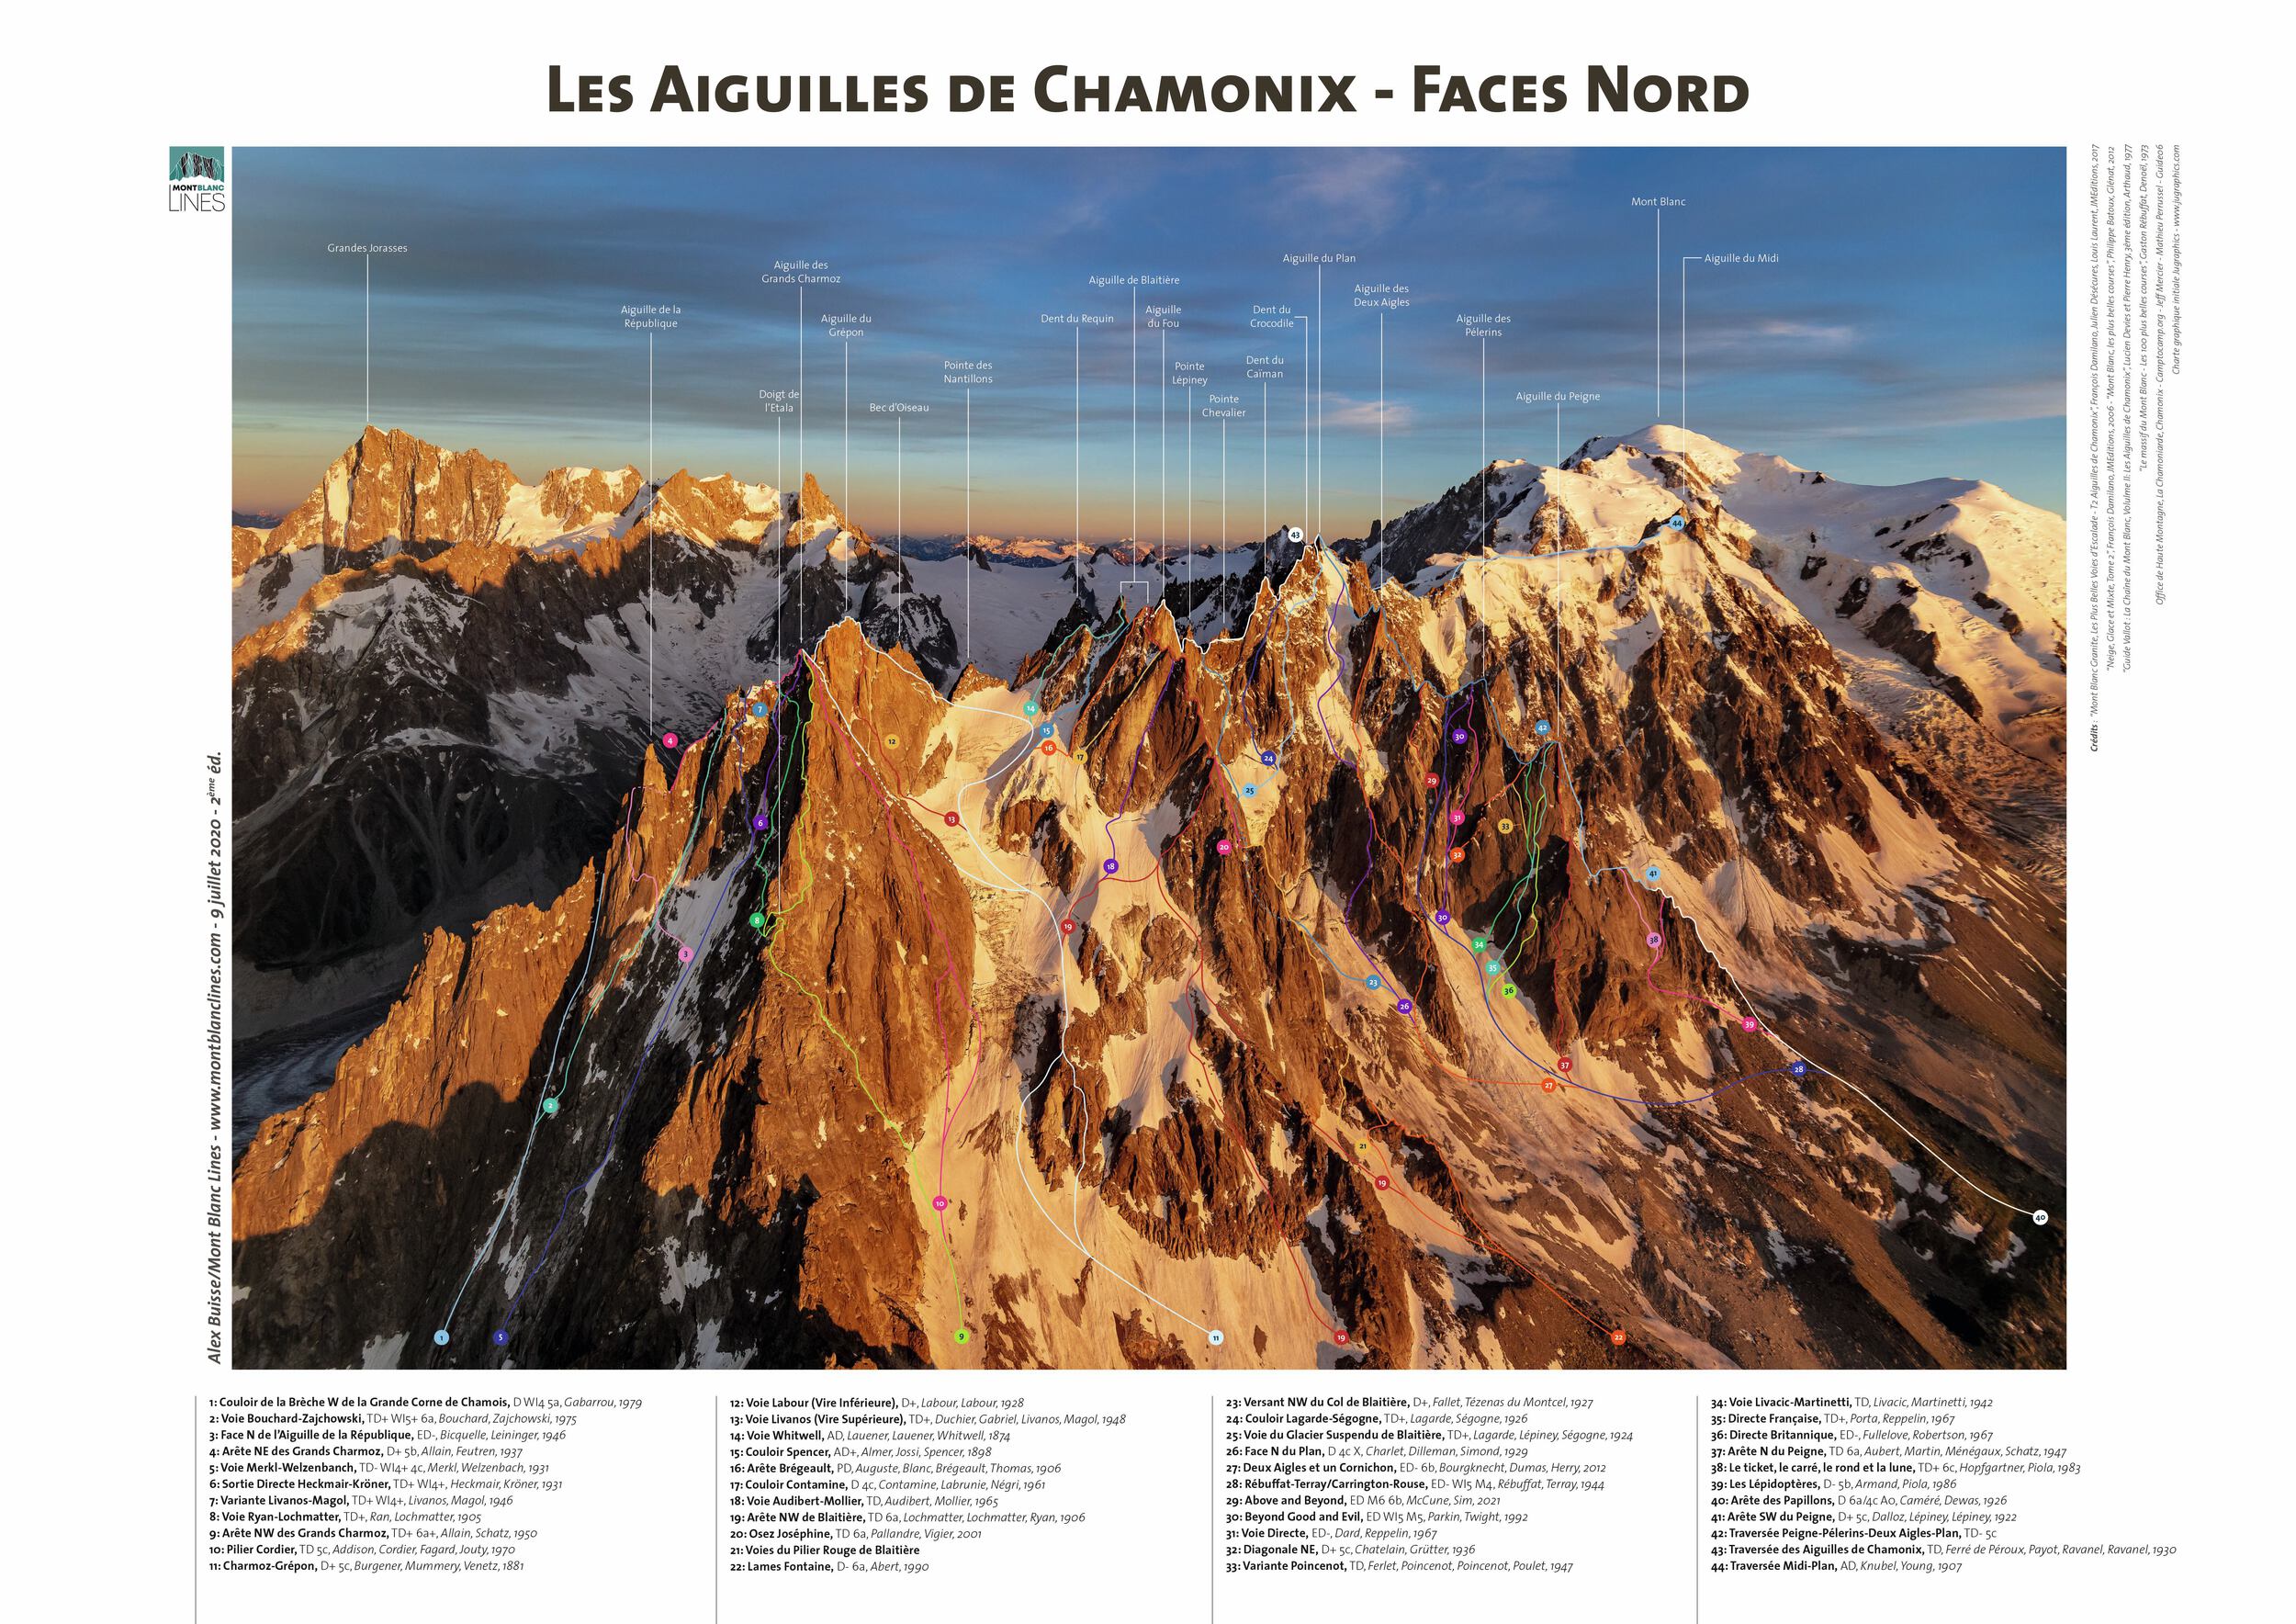 Aiguilles de Chamonix - North Faces